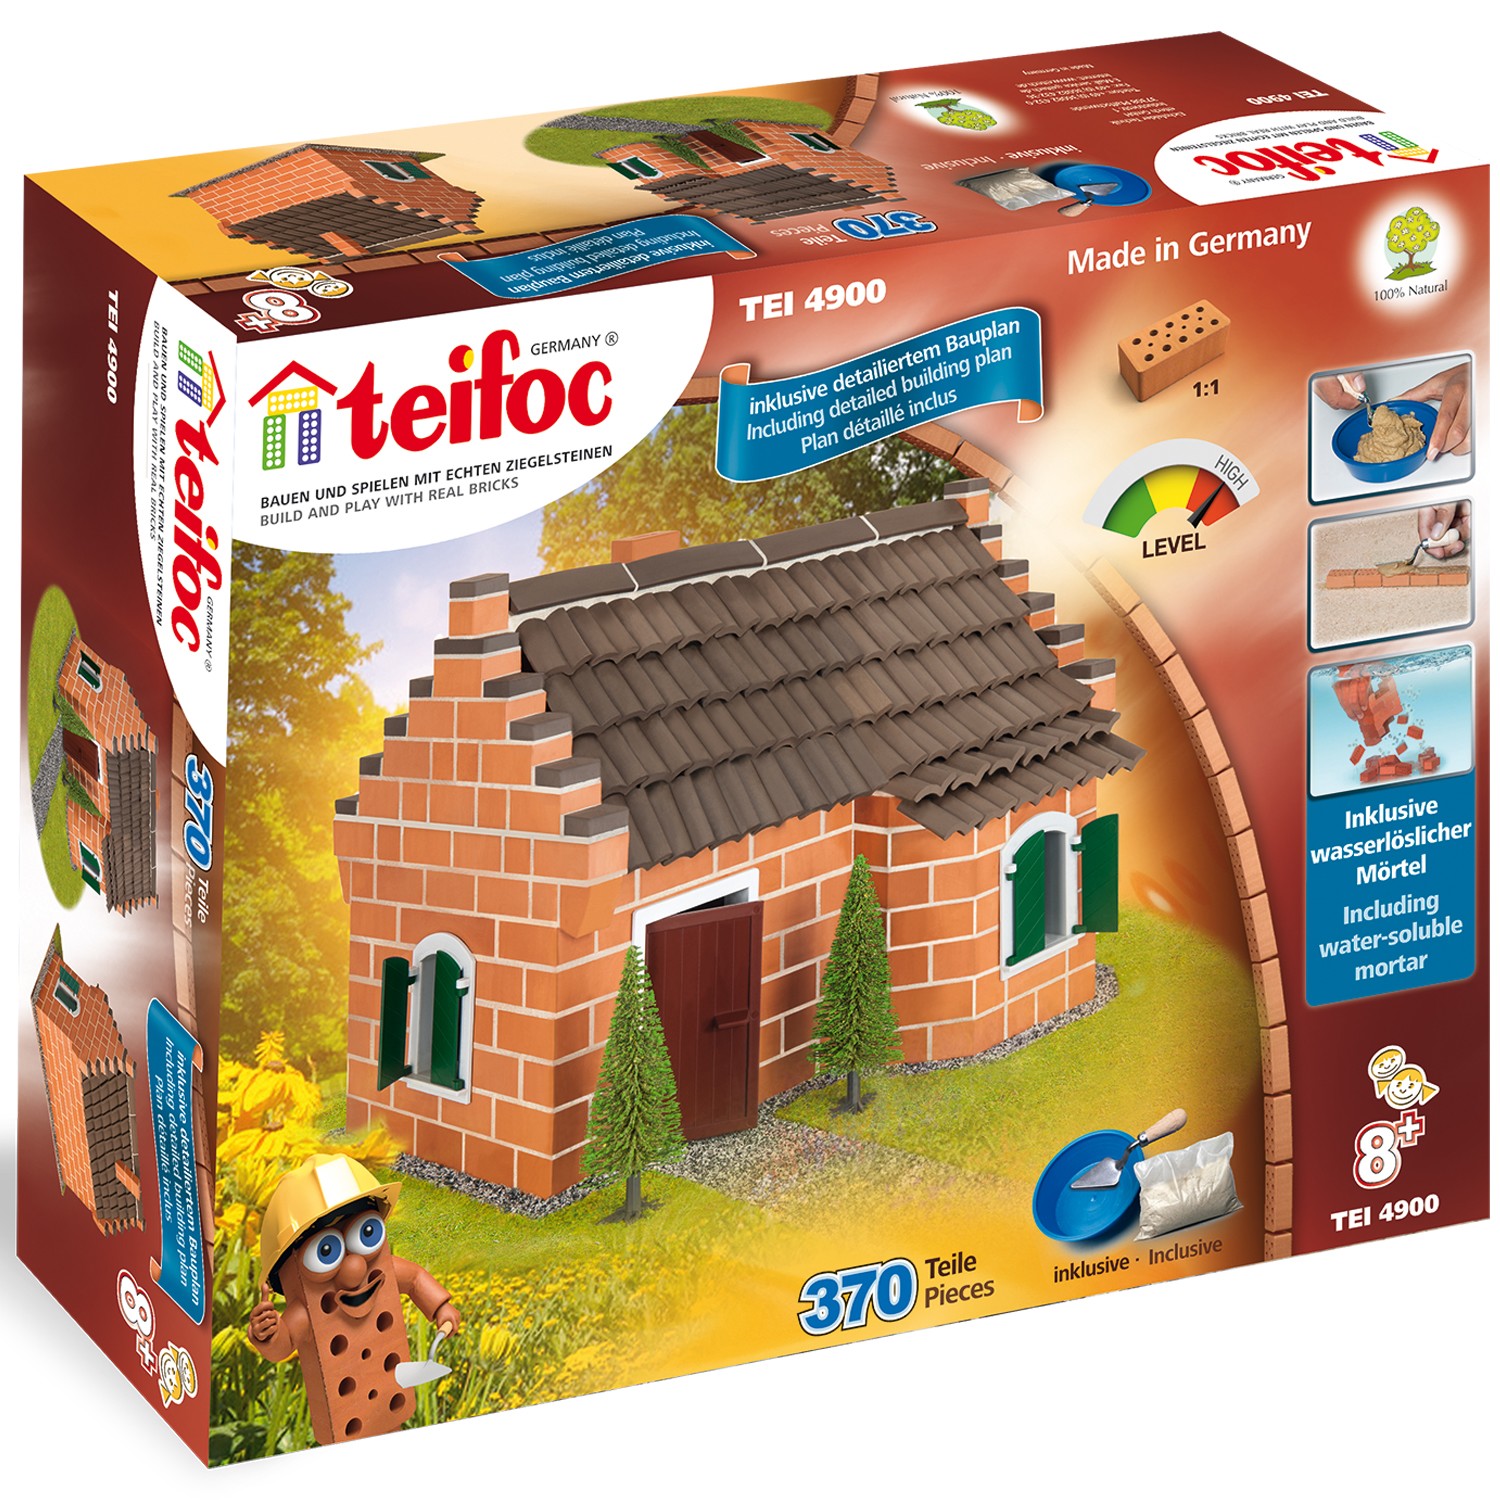 Teifoc House Tile Roof Brick Construction Set, 207 Building Blocks